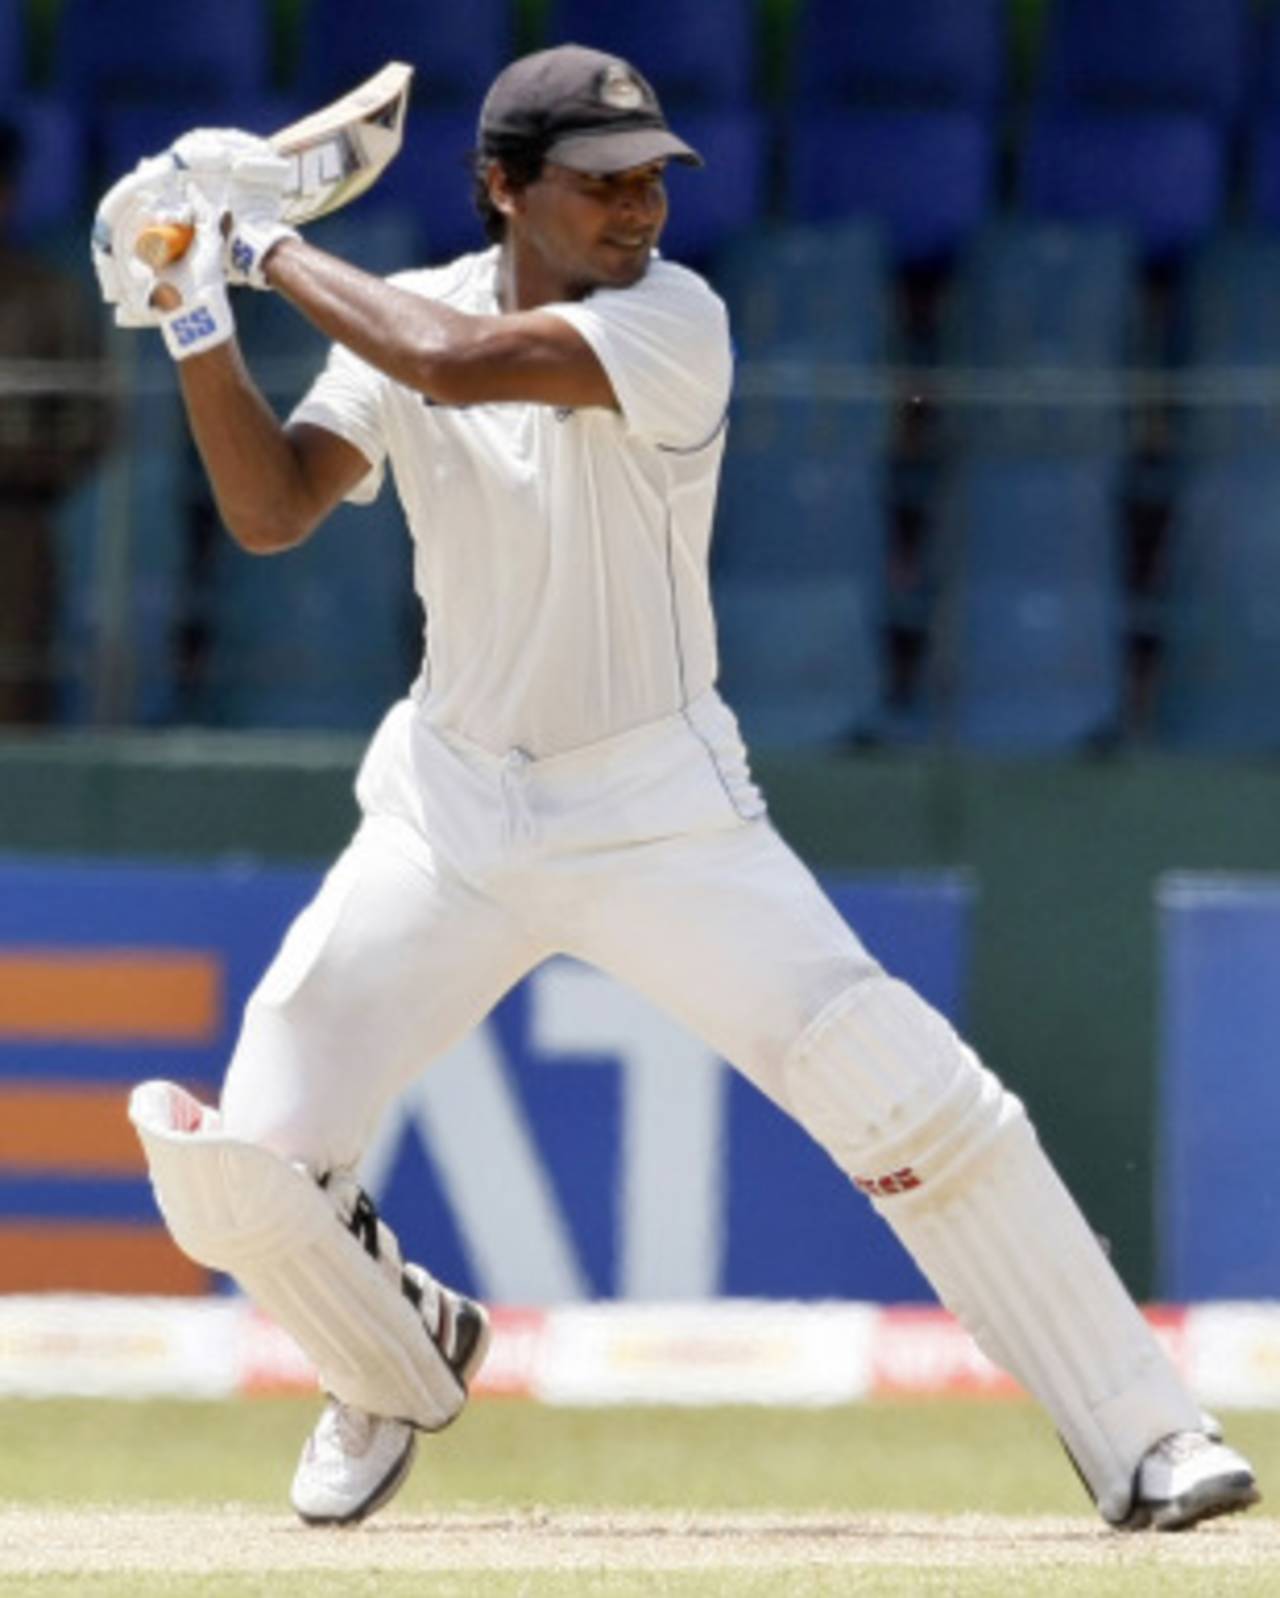 Kumar Sangakkara punishes a ball outside the off stump, Sri Lanka v India, 2nd Test, SSC, 2nd day, July 27, 2010